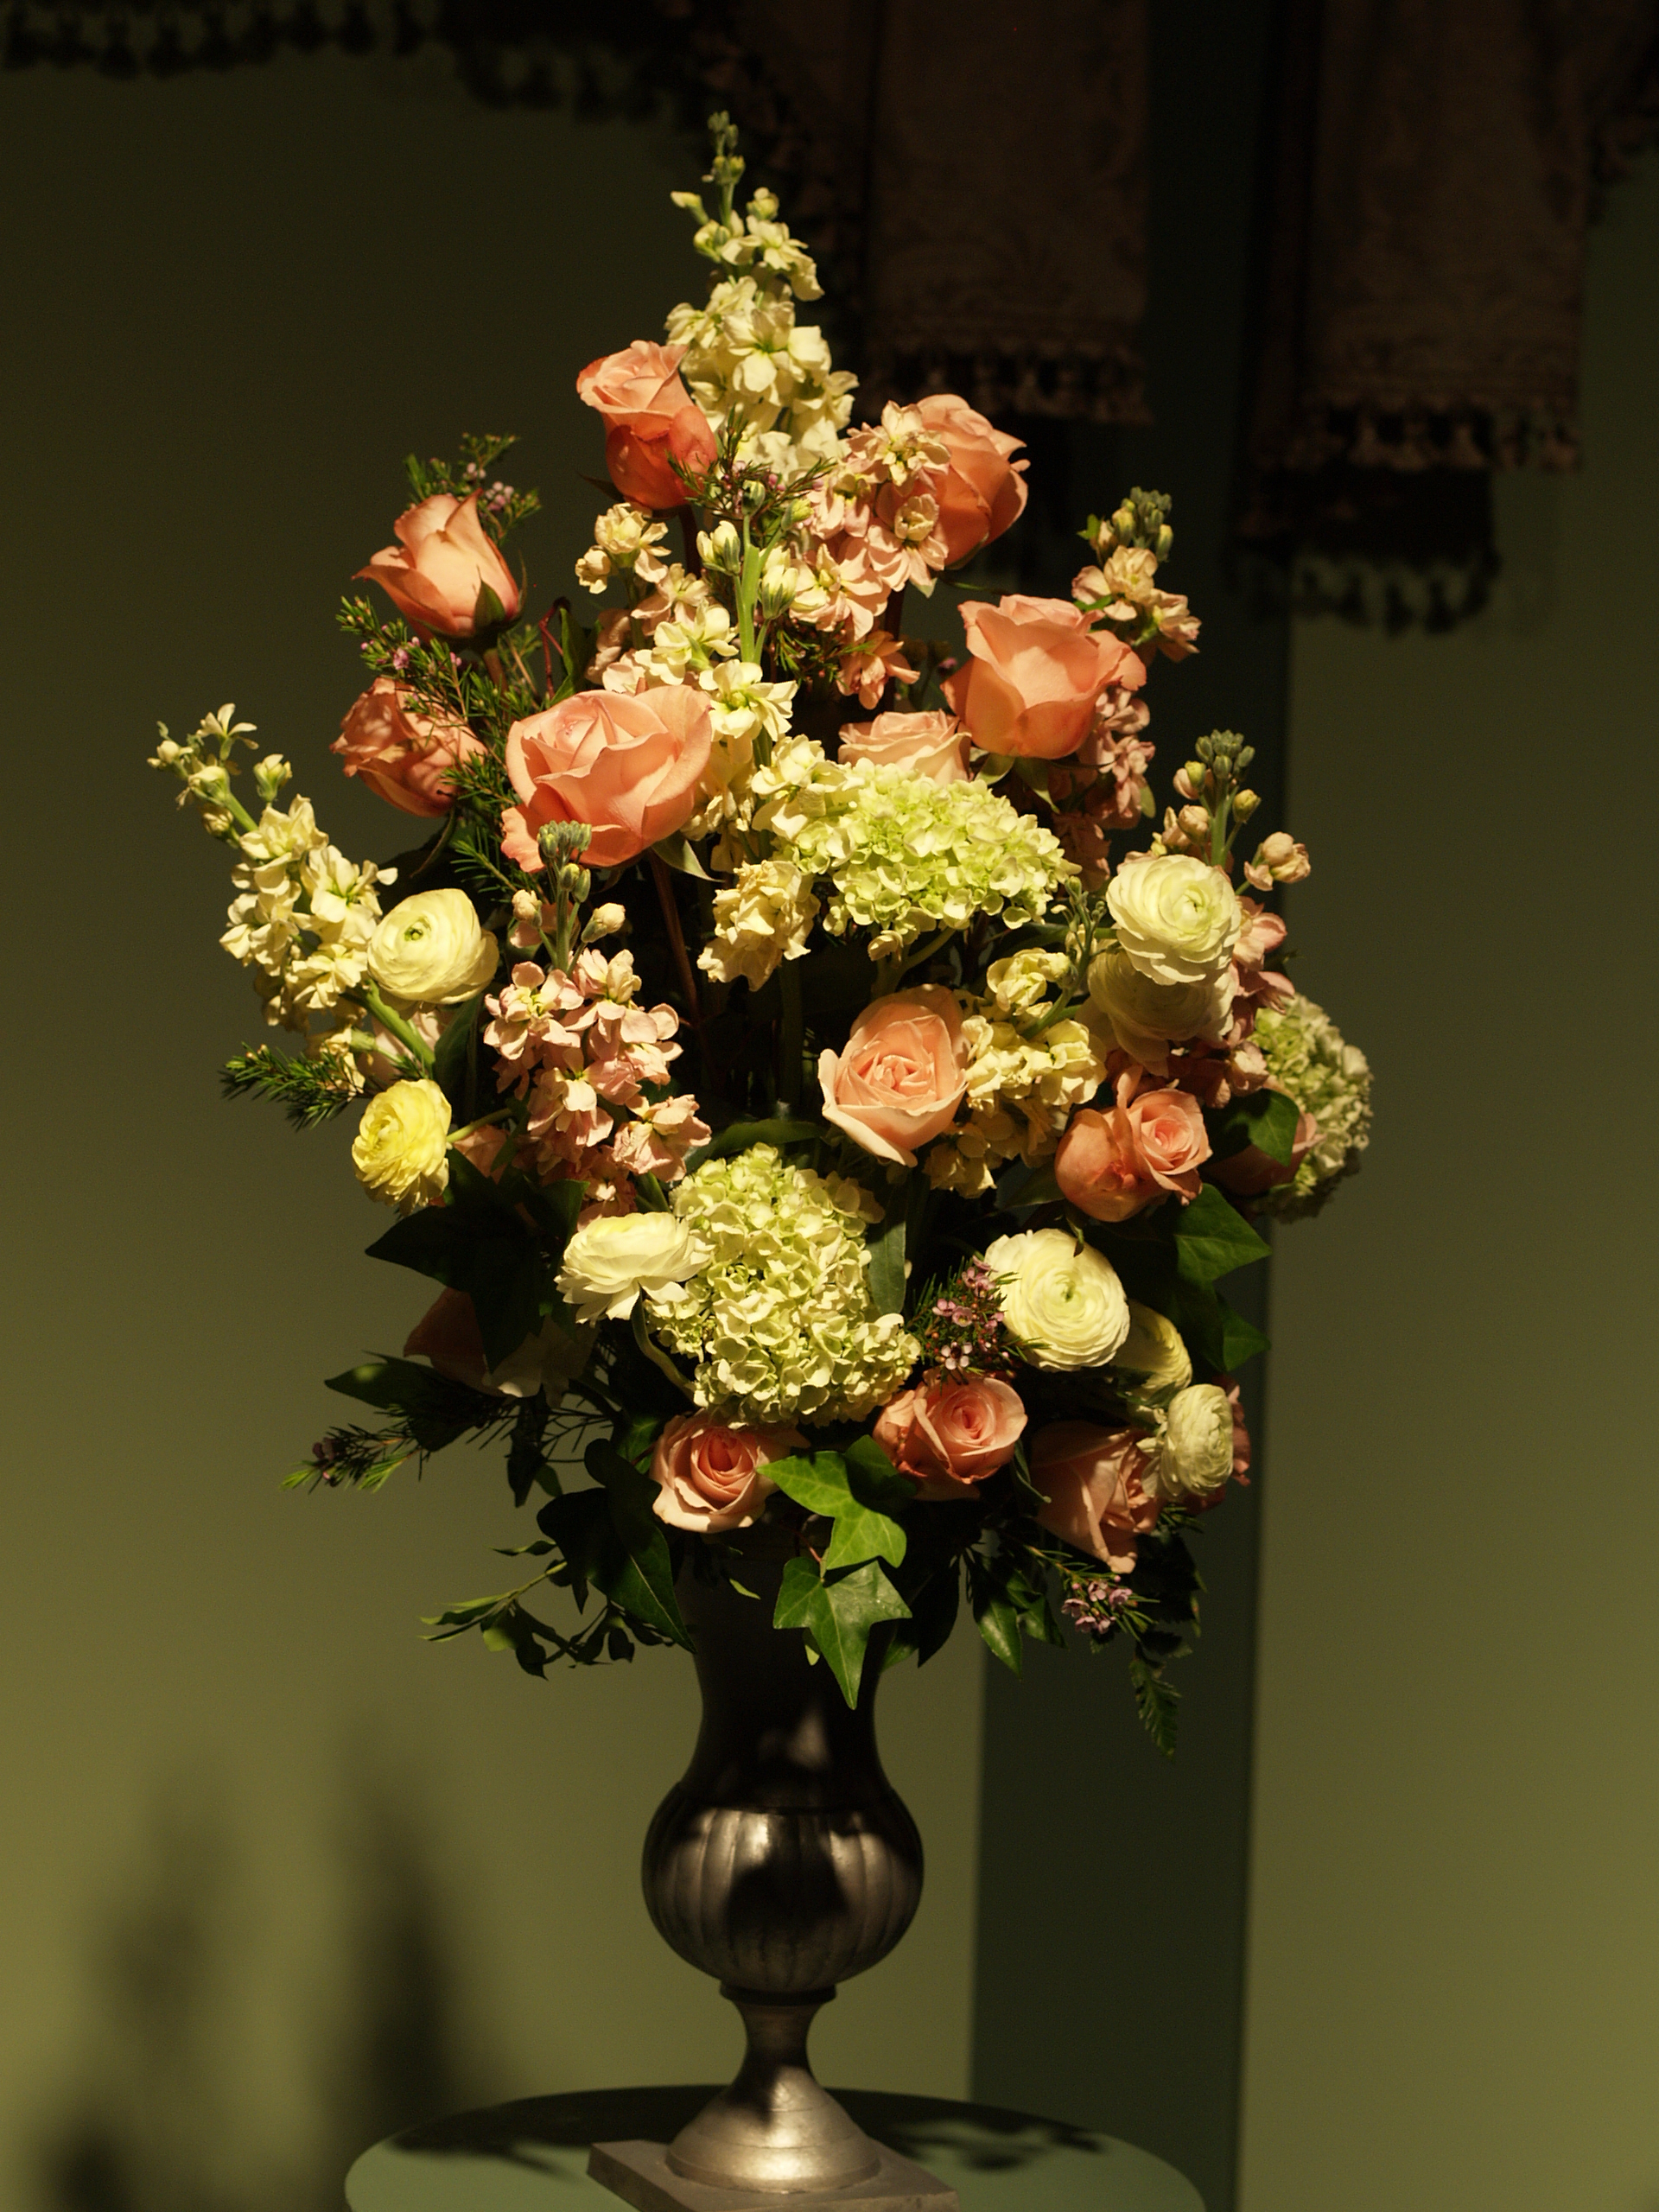 Flower arrangement by Nancy Jamieson